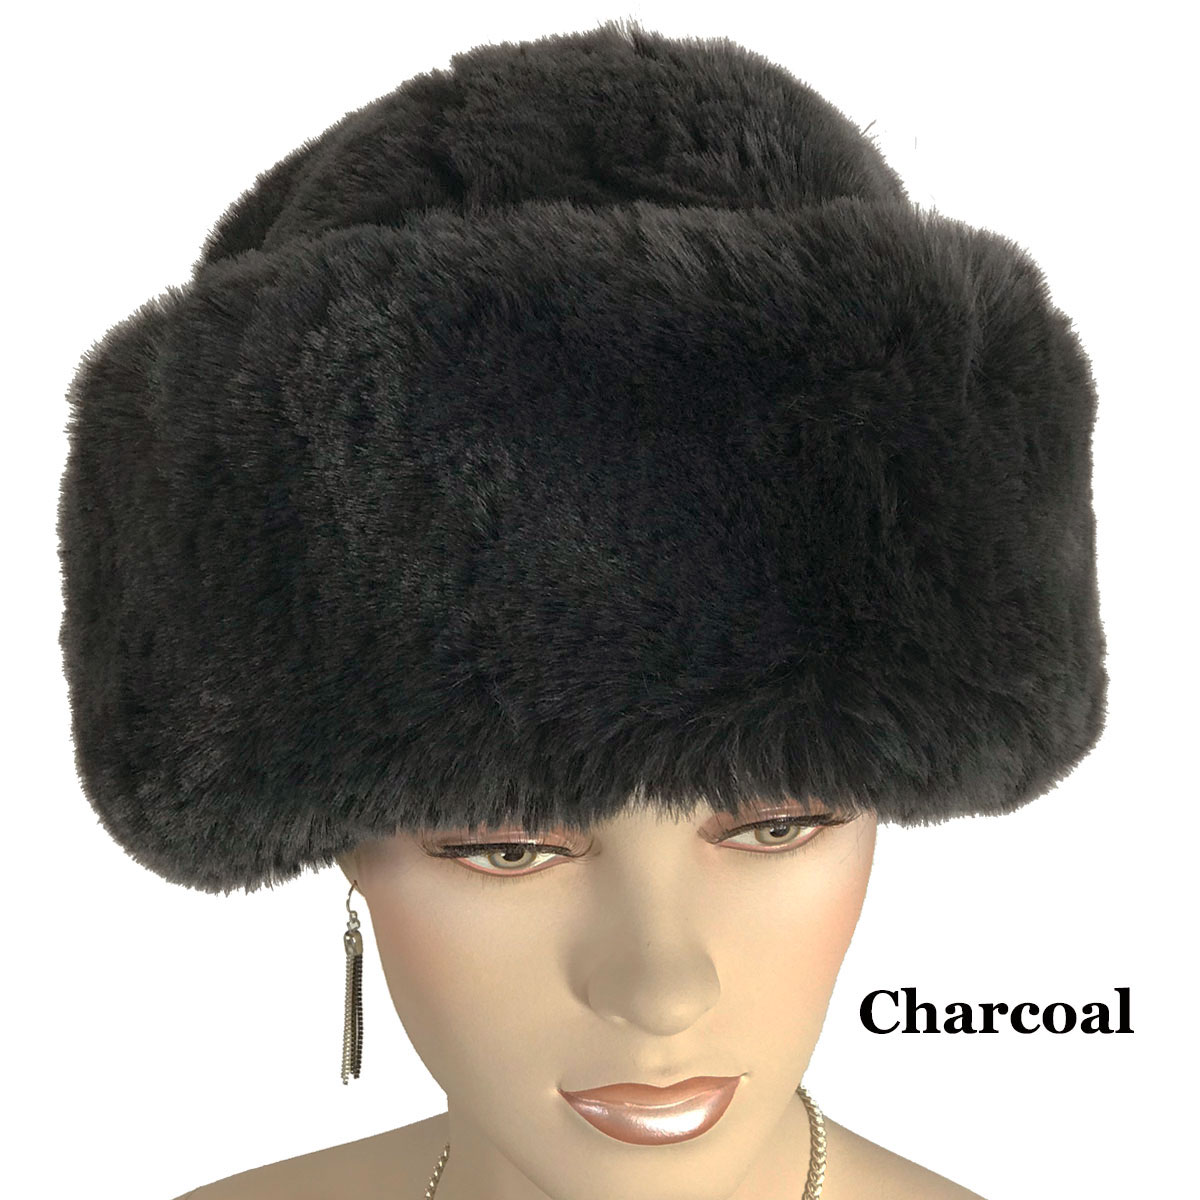 3201 - Faux Rabbit Cossack Hats Charcoal <br> Faux Rabbit Cossack Hat - 